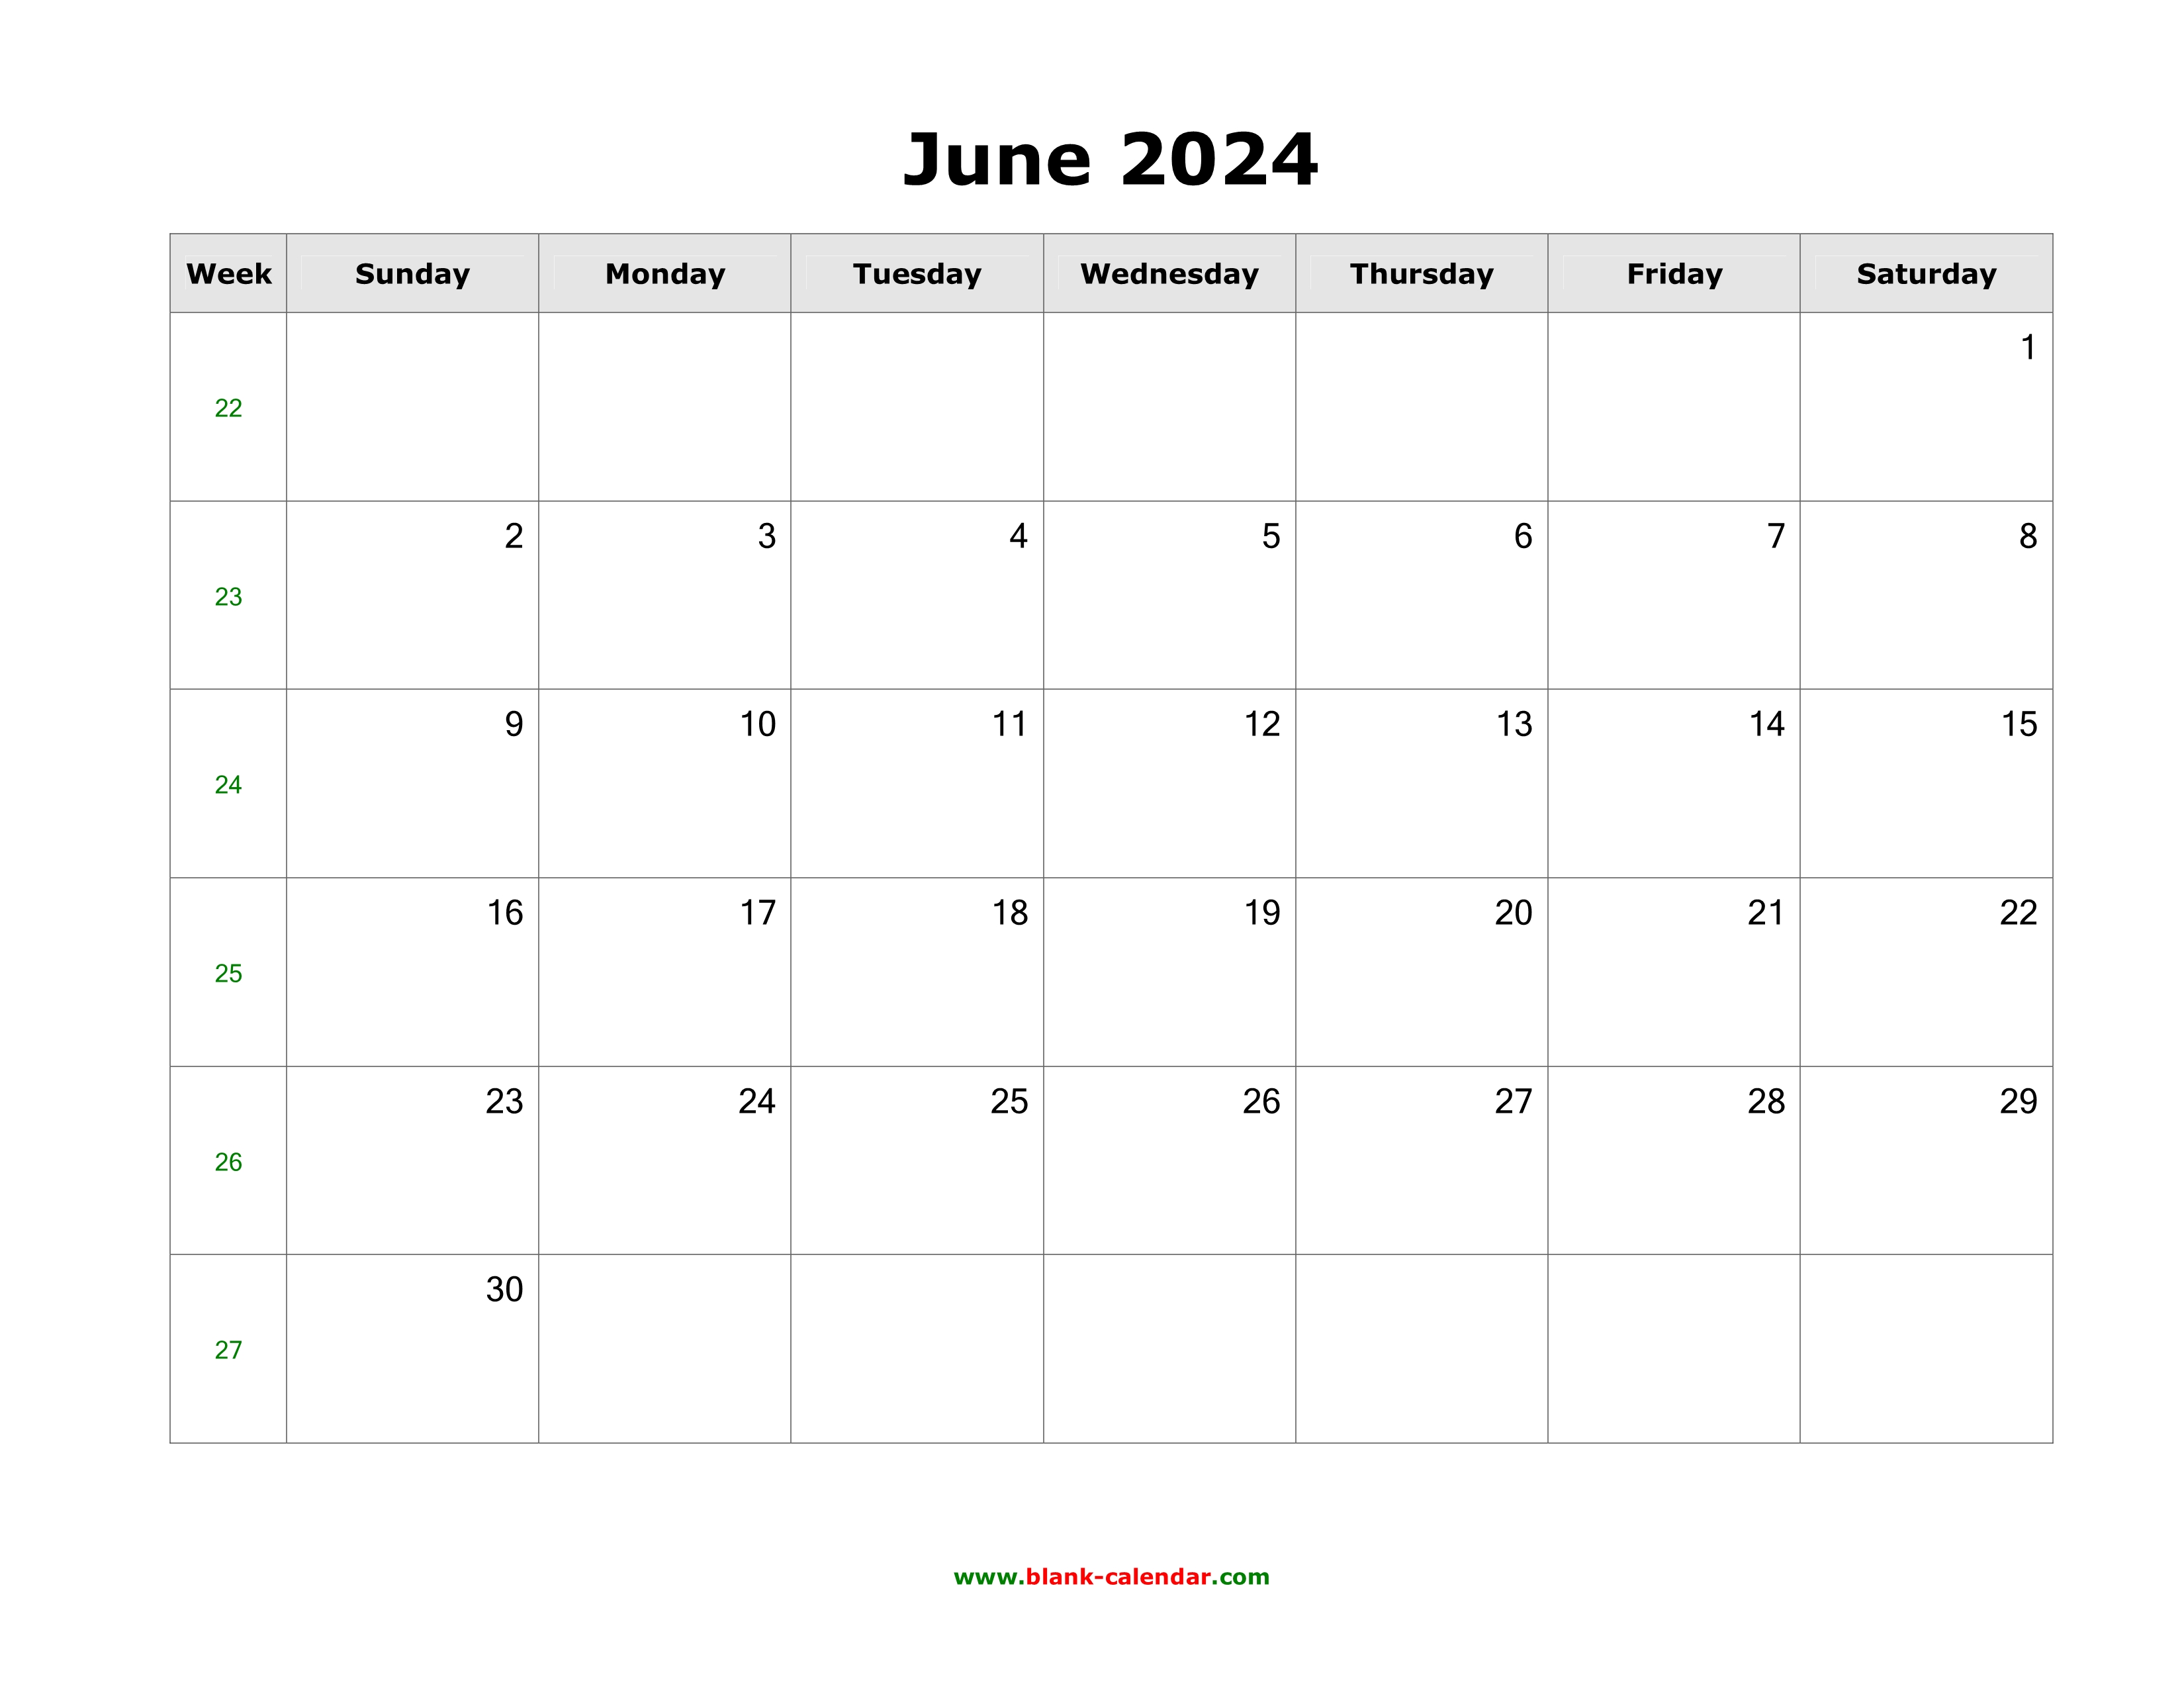 June 2024 Blank Calendar Free Download Calendar Templates